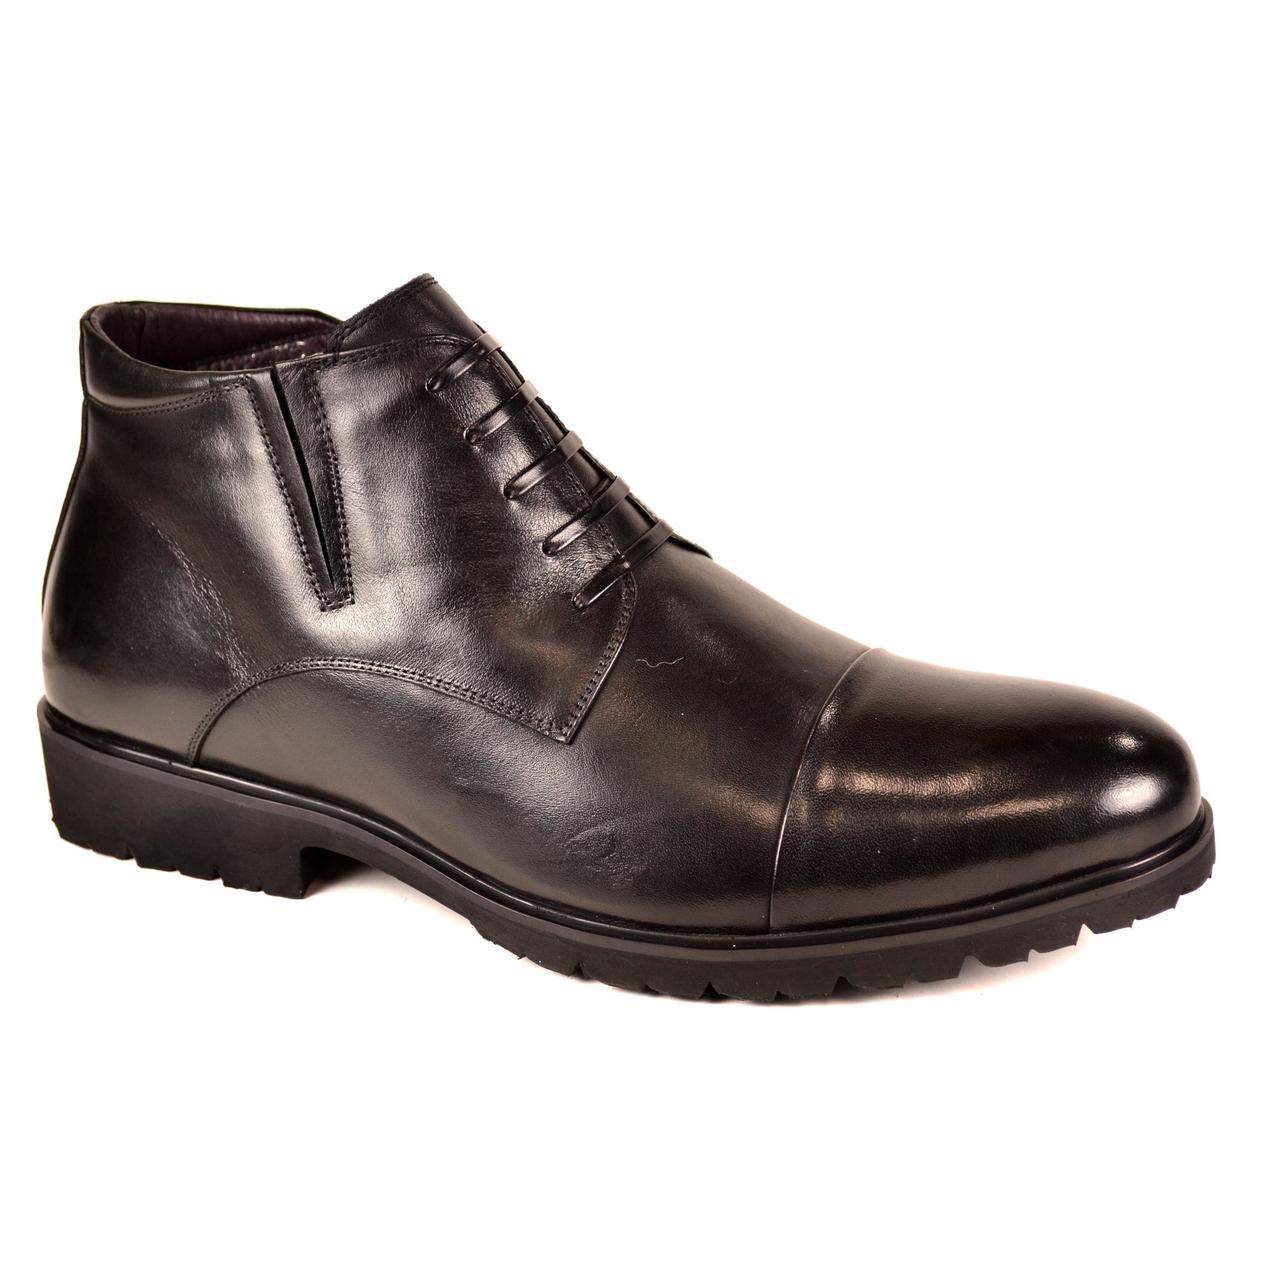 

Мужские модельные ботинки Diloce Jospan код: 2662, размеры: 39, 40, 44, 45